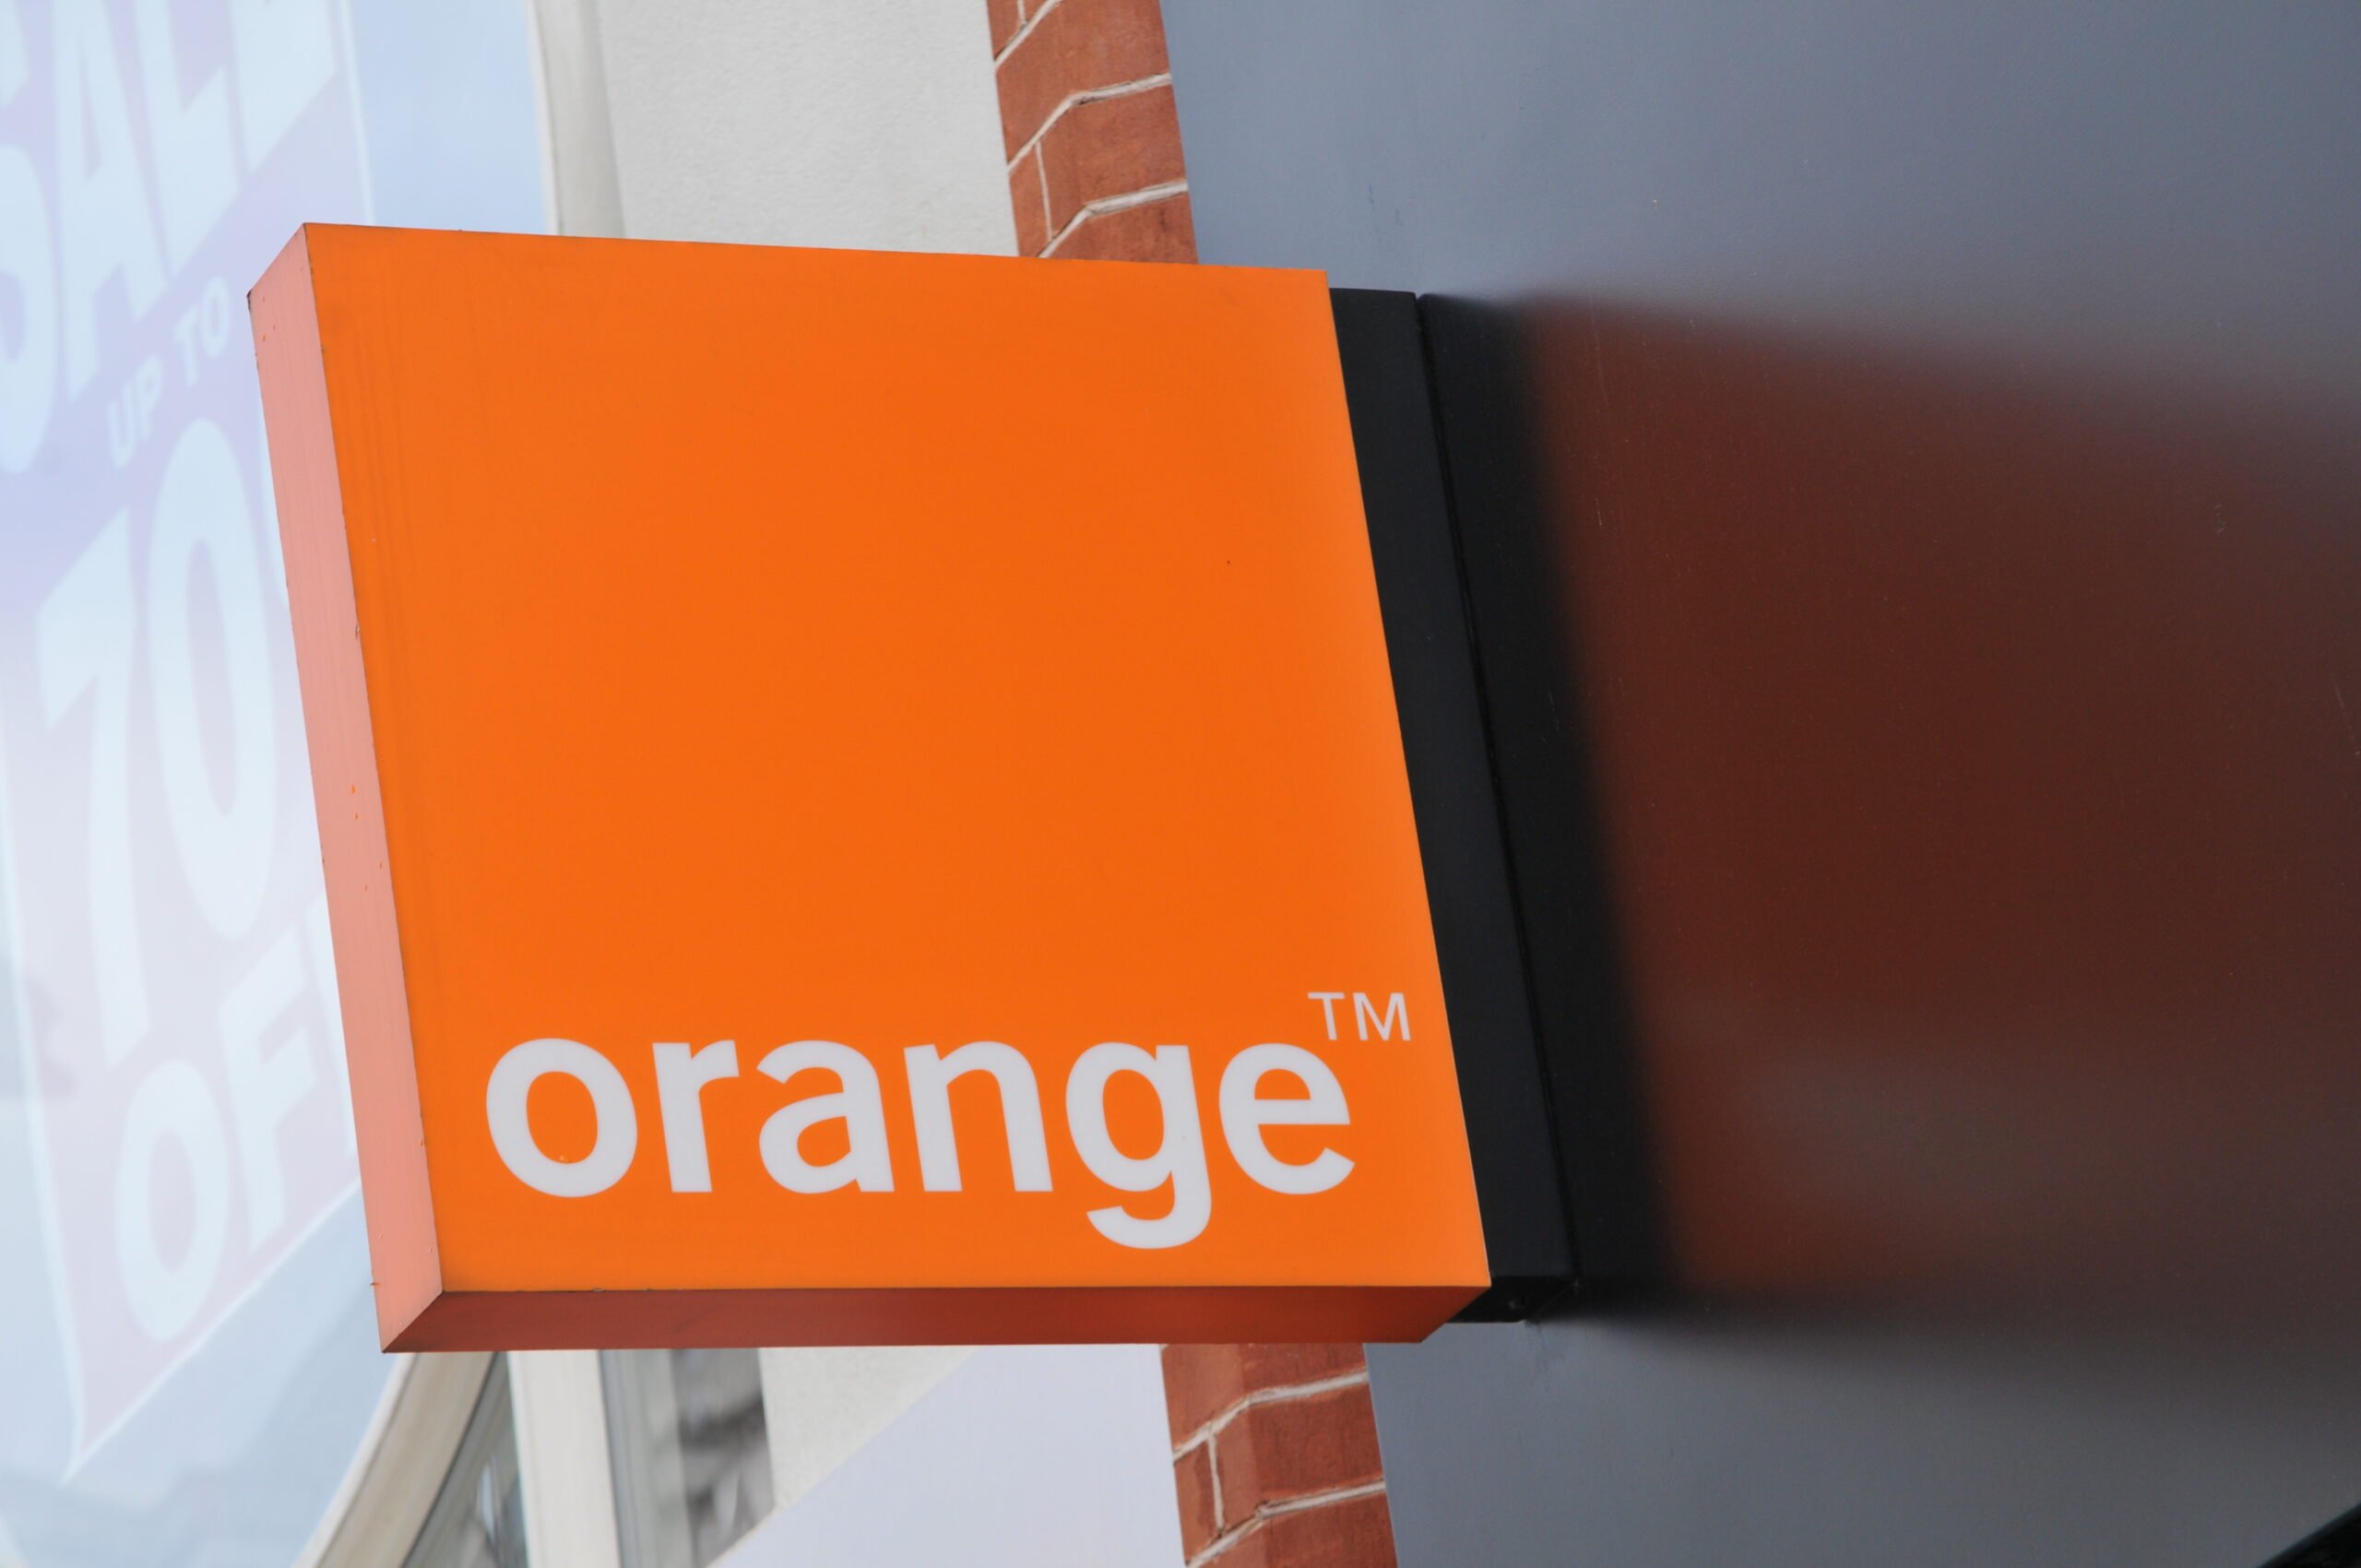 Pomarańczowe logo firmy "orange" jako szyld sklepu